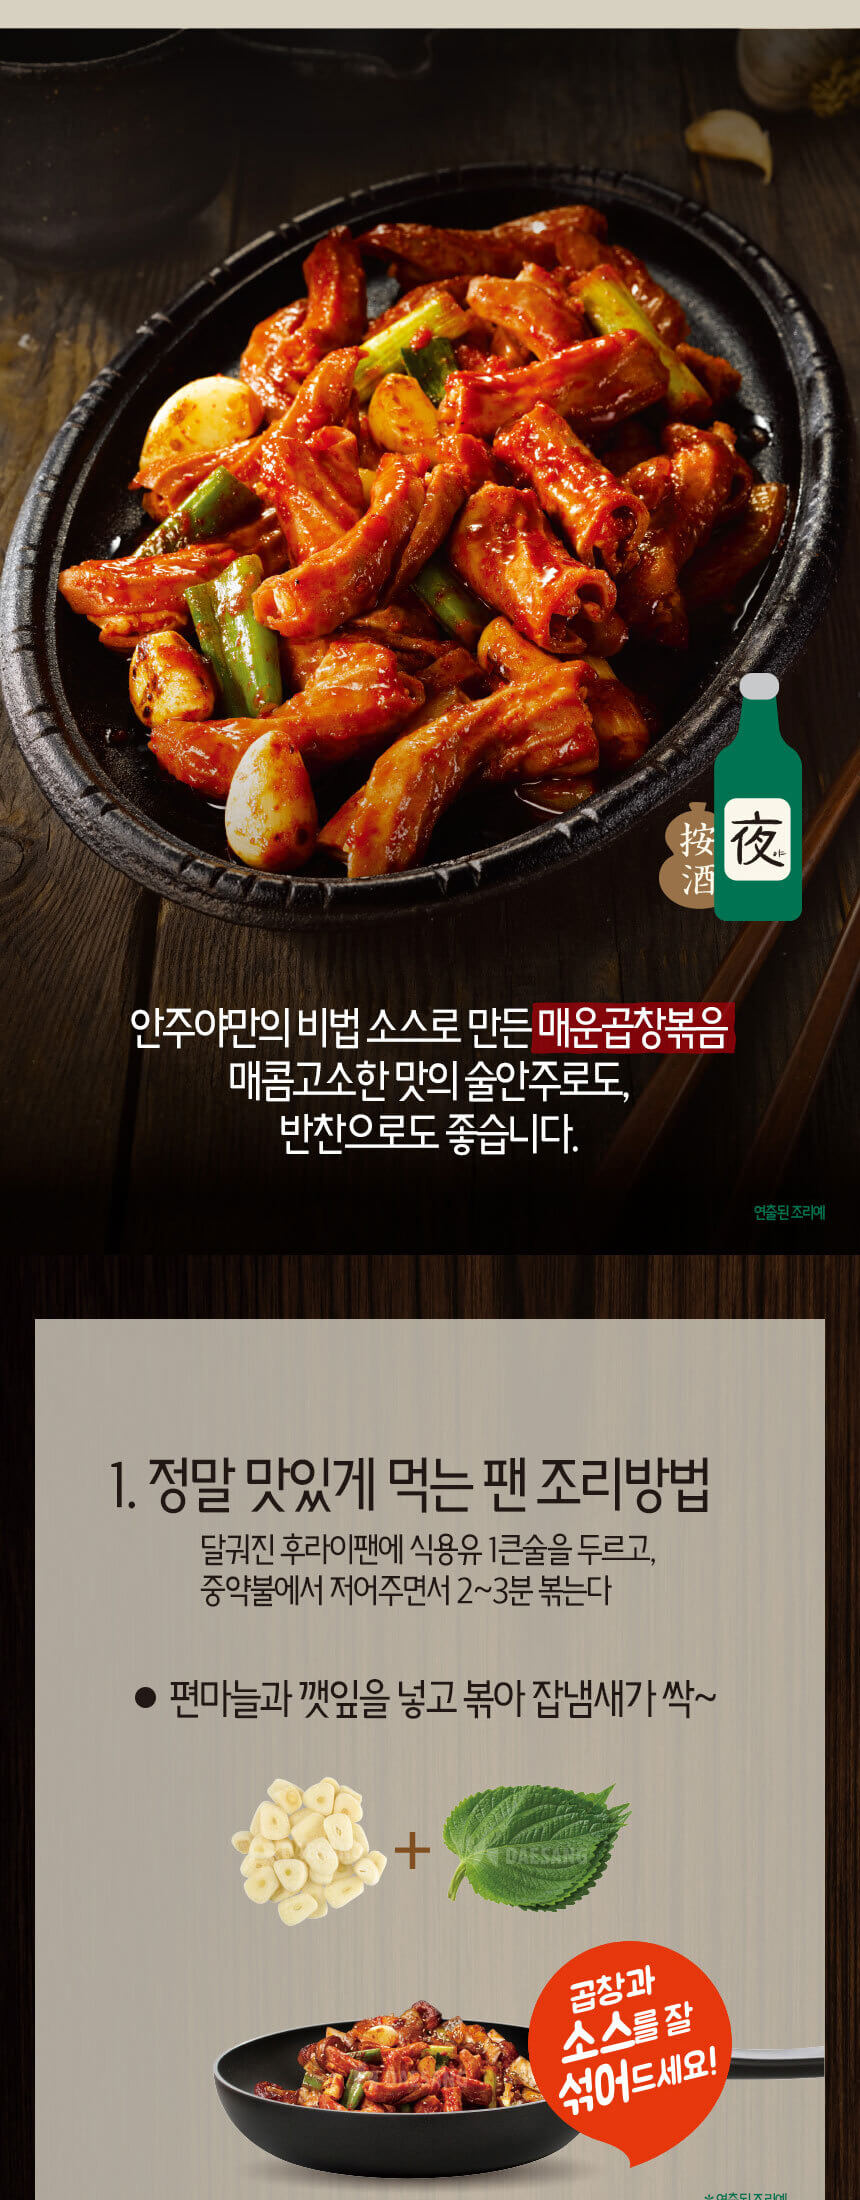 韓國食品-청정원 안주야 매운곱창볶음 160g